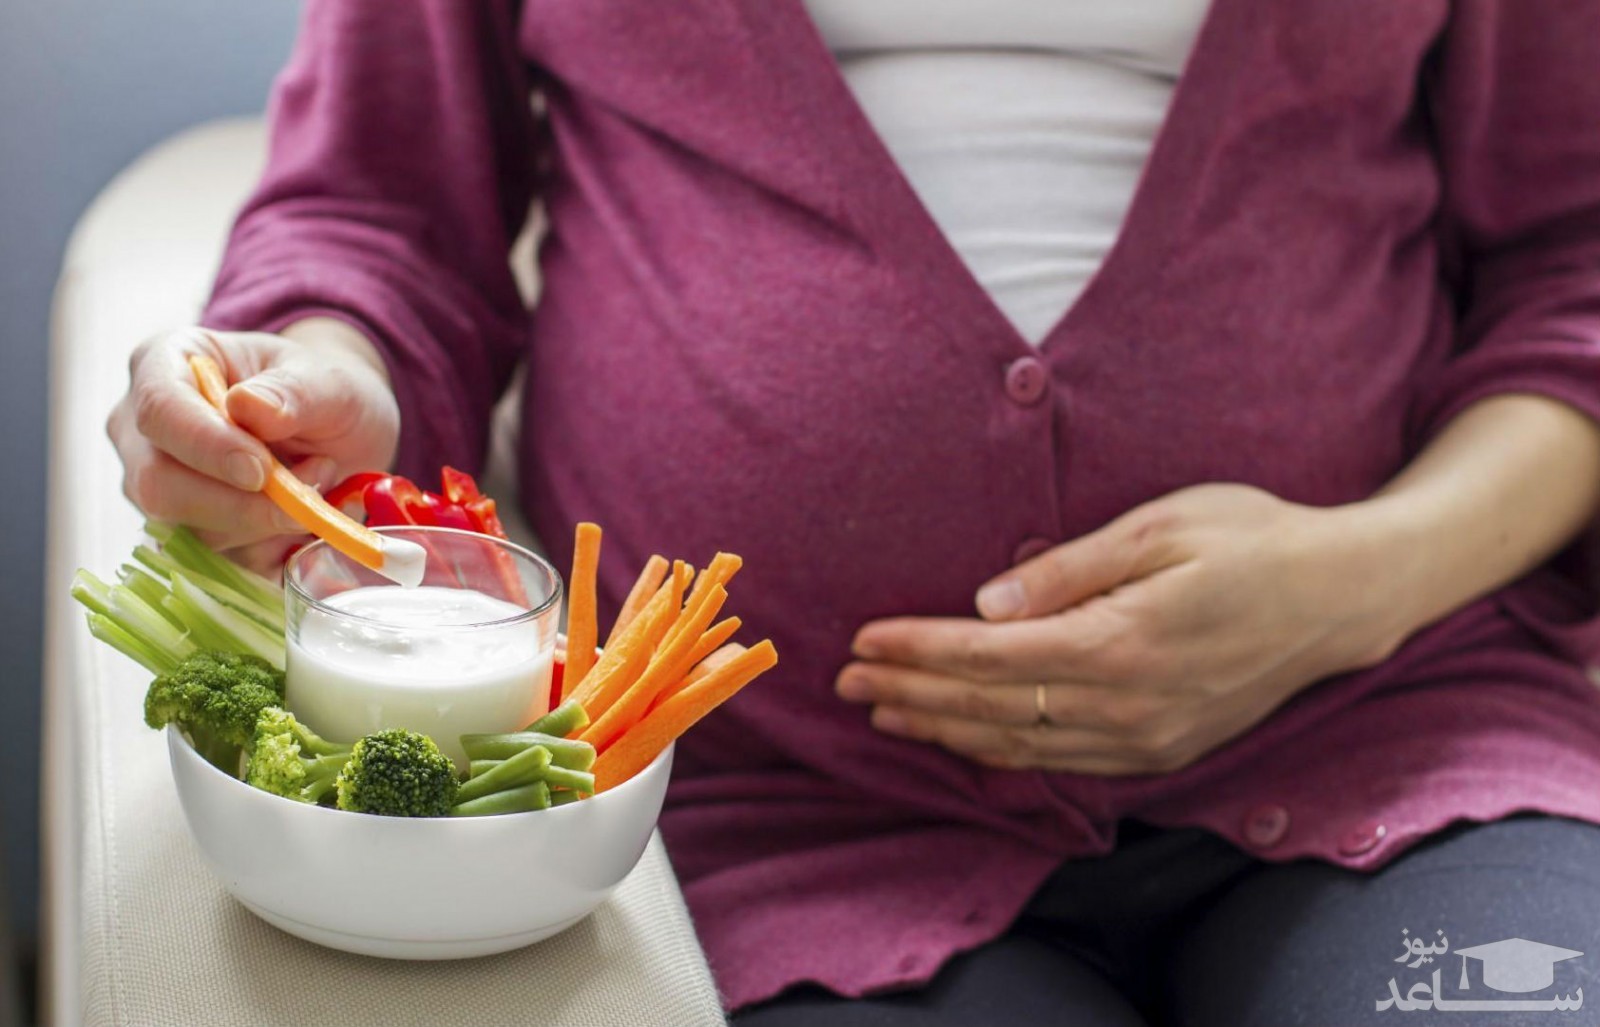 بهترین غذا برای شام در دوران بارداری چیست؟